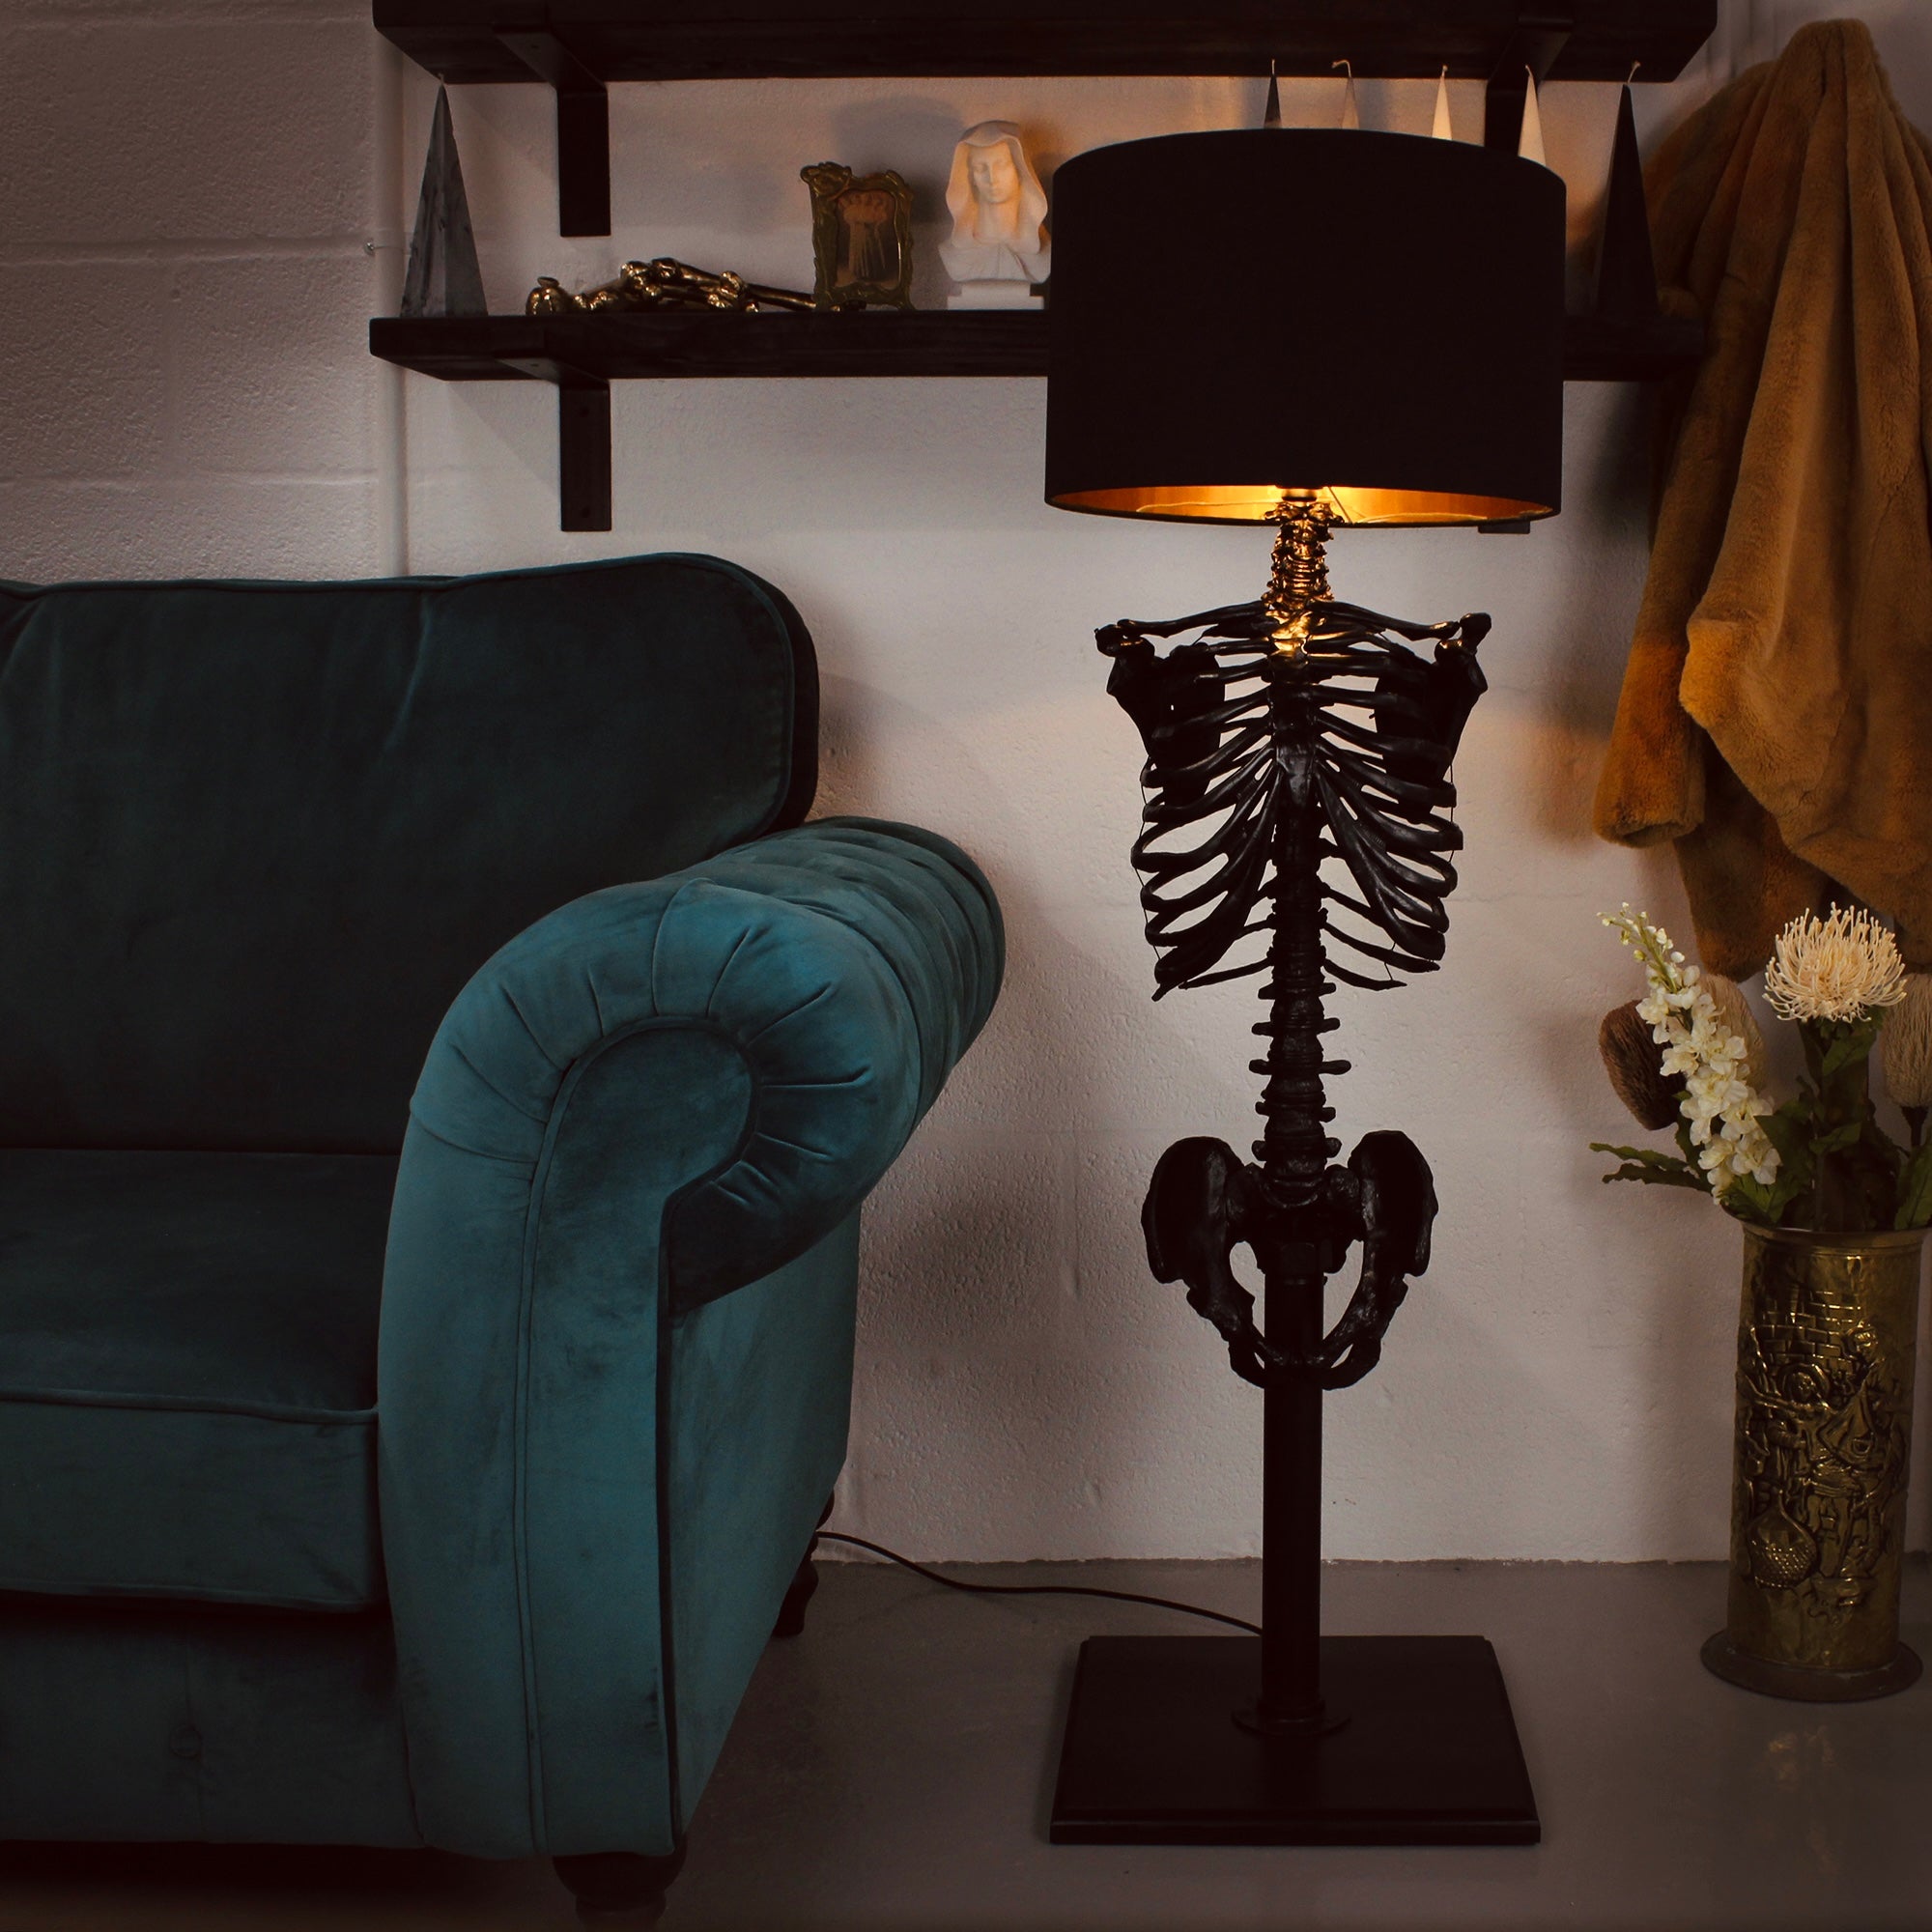 The Black Skeleton Floor Lamp by The Blackened Teeth